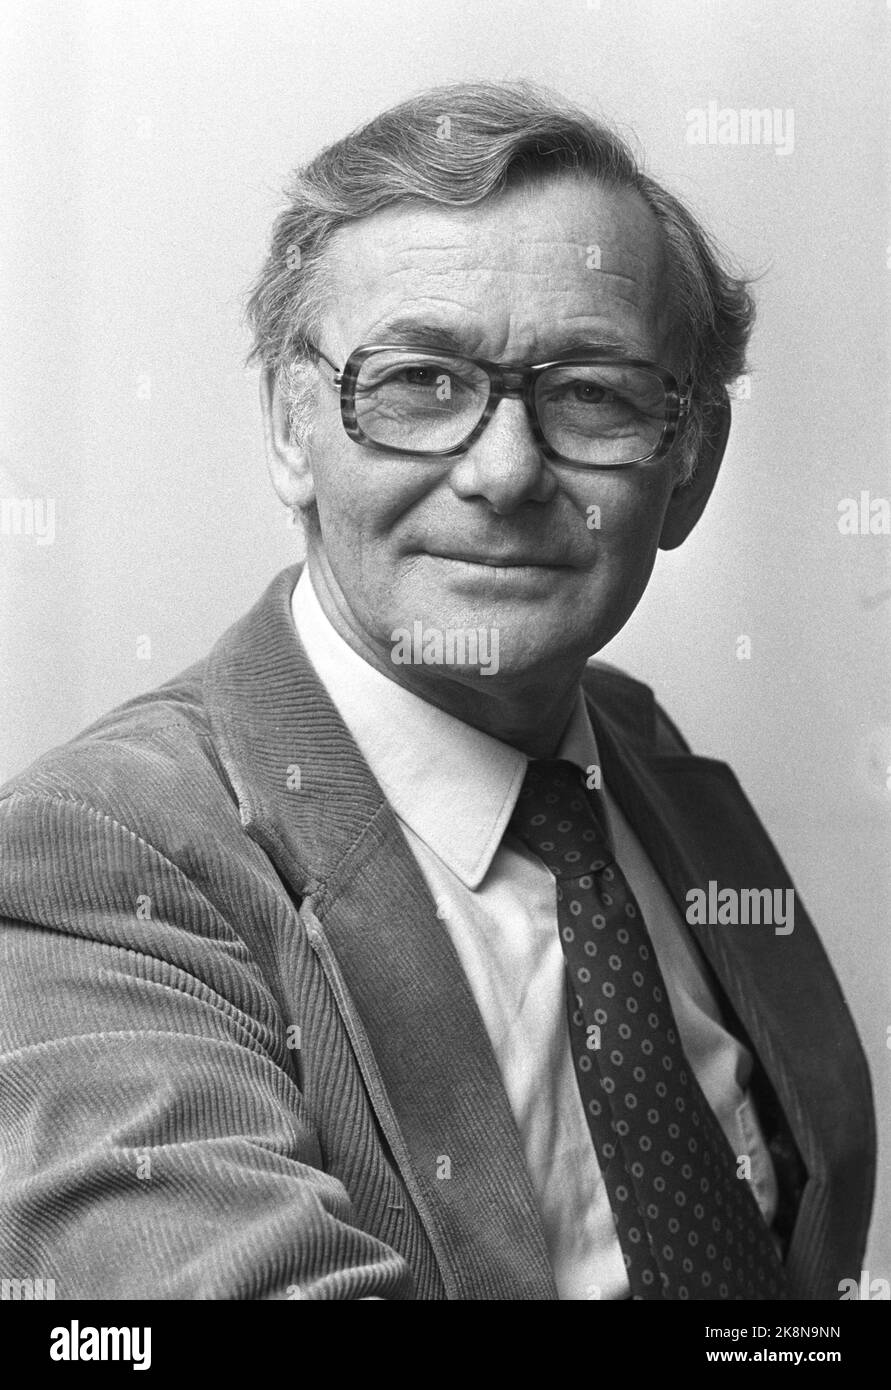 Oslo January 10, 1977. Program manager Odd Grythe. Photo: Bjørn Sigurdsøn / NTB / NTB Stock Photo